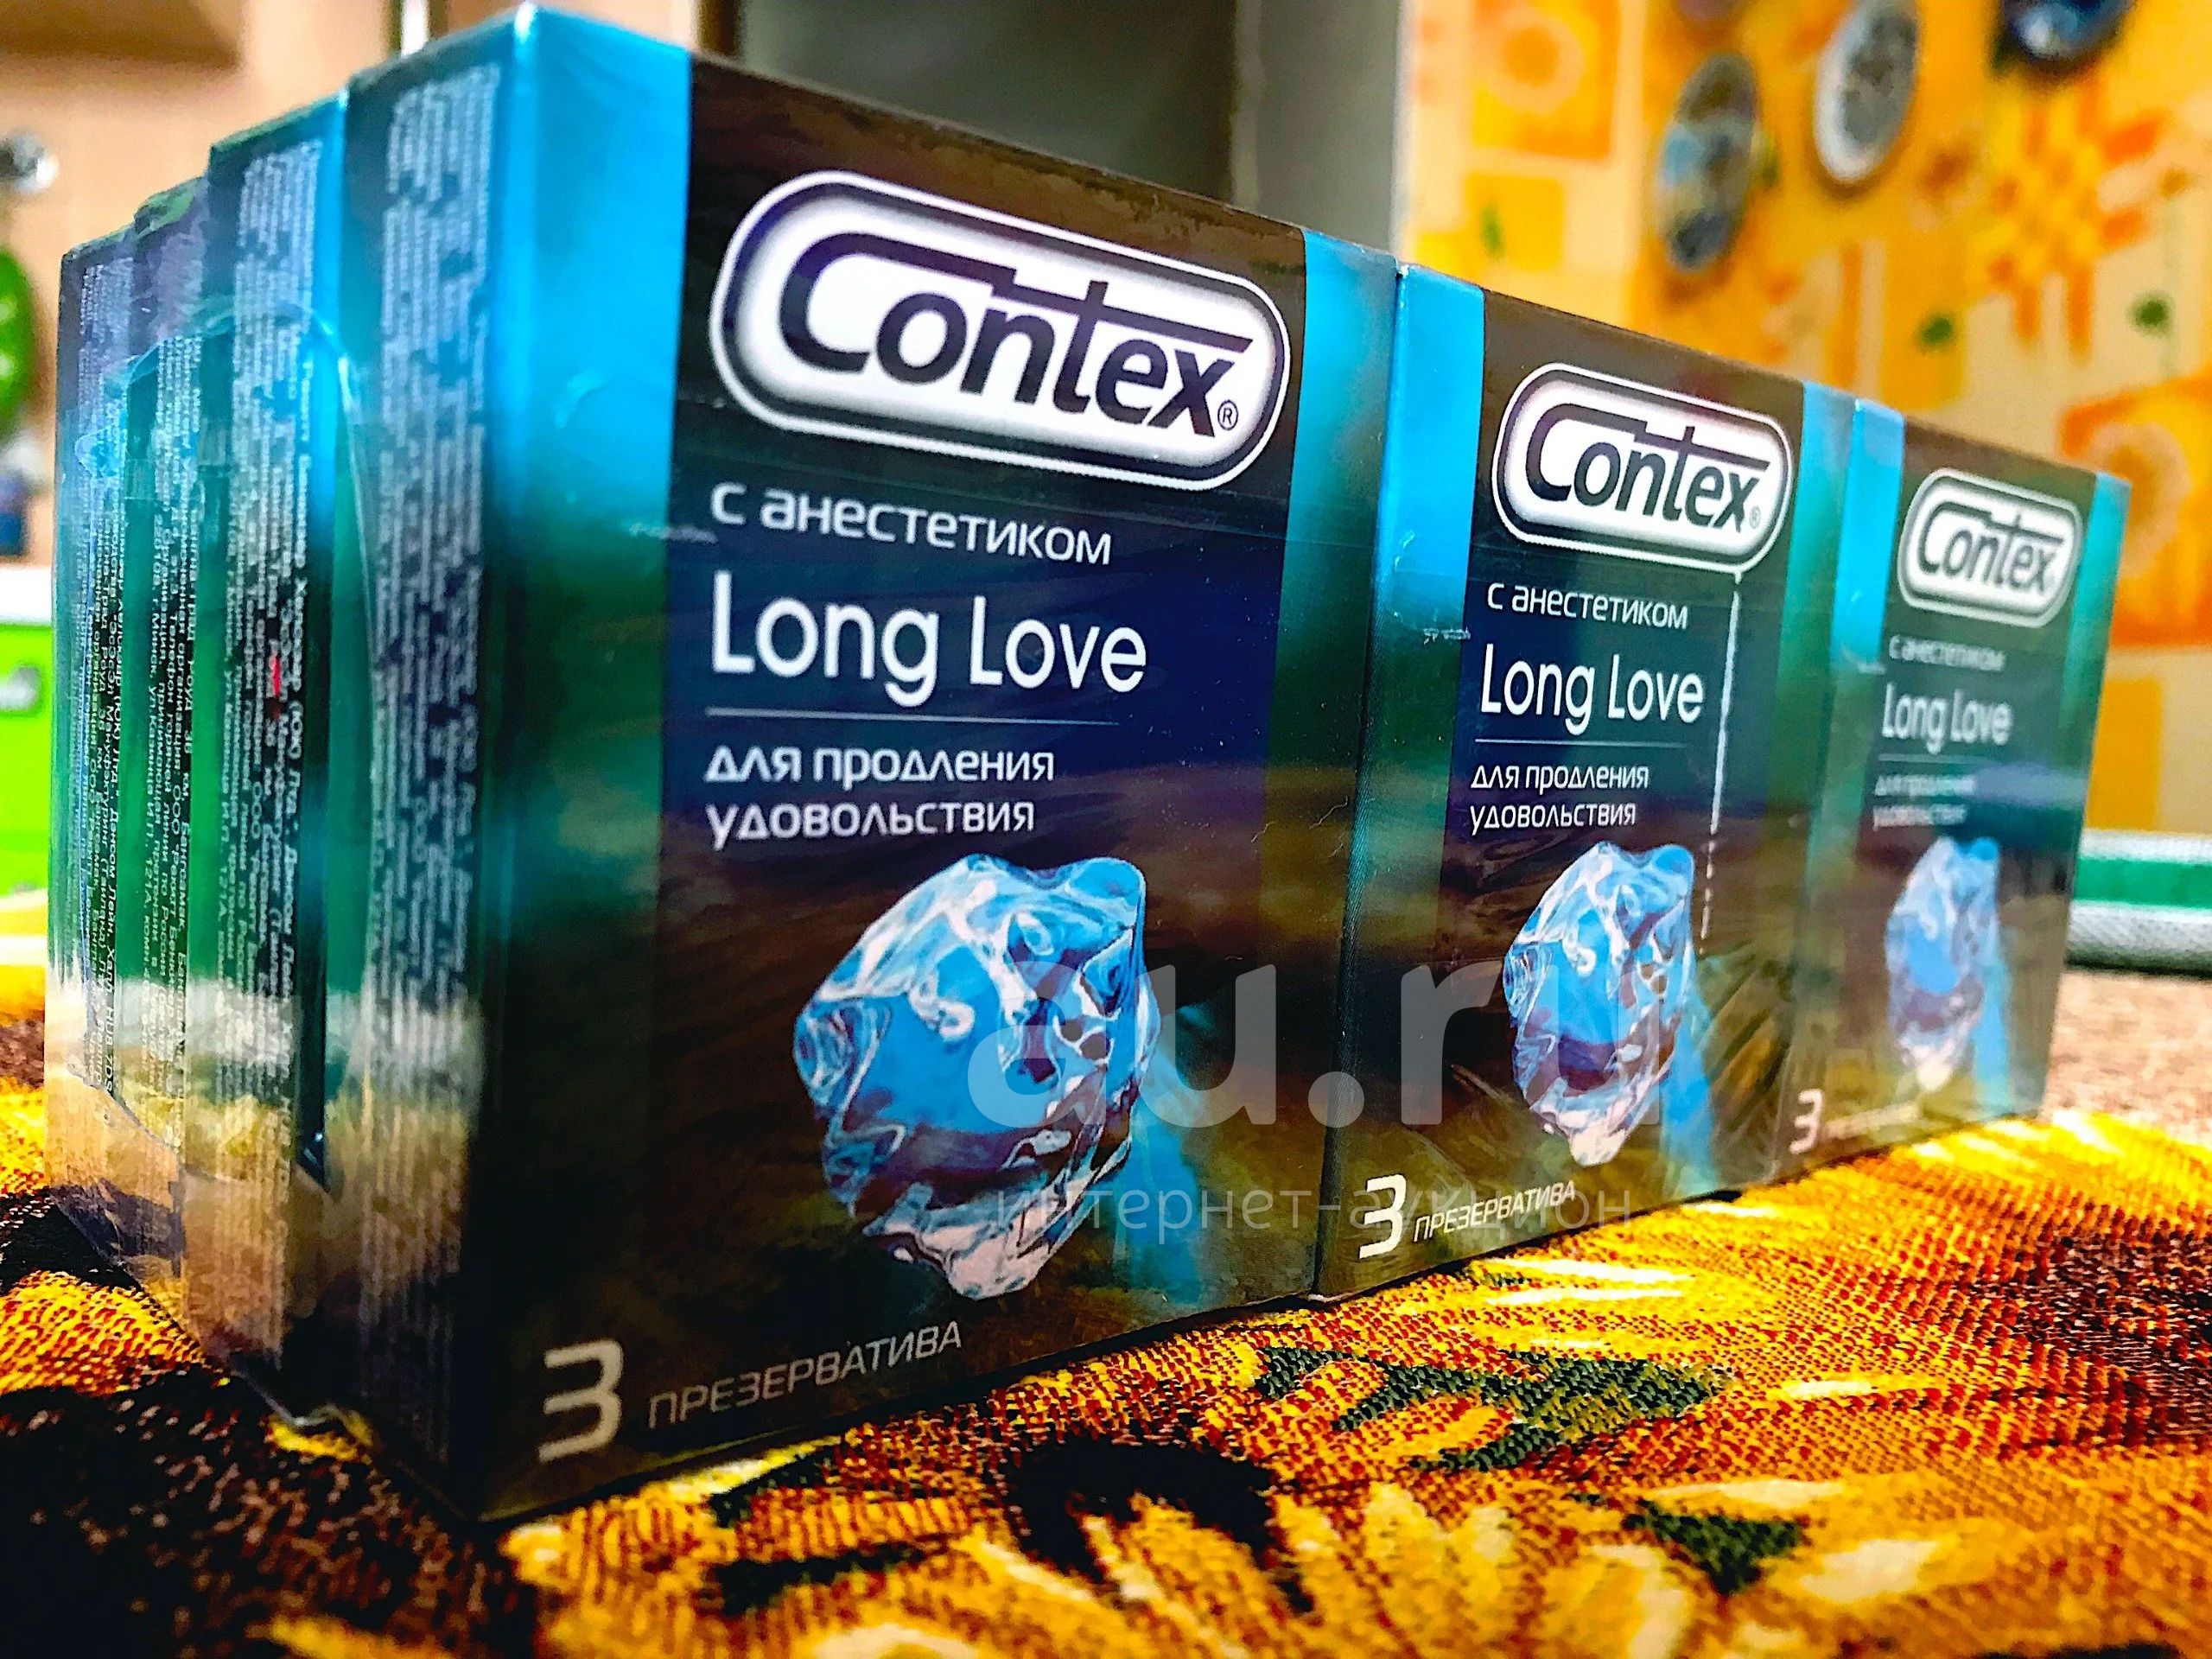 Лонг лов. Durex long Love 12 шт. Презерватив Контекс long Love 3шт. Contex 3 long Love презервативы №12. Блок презервативов Контекс.